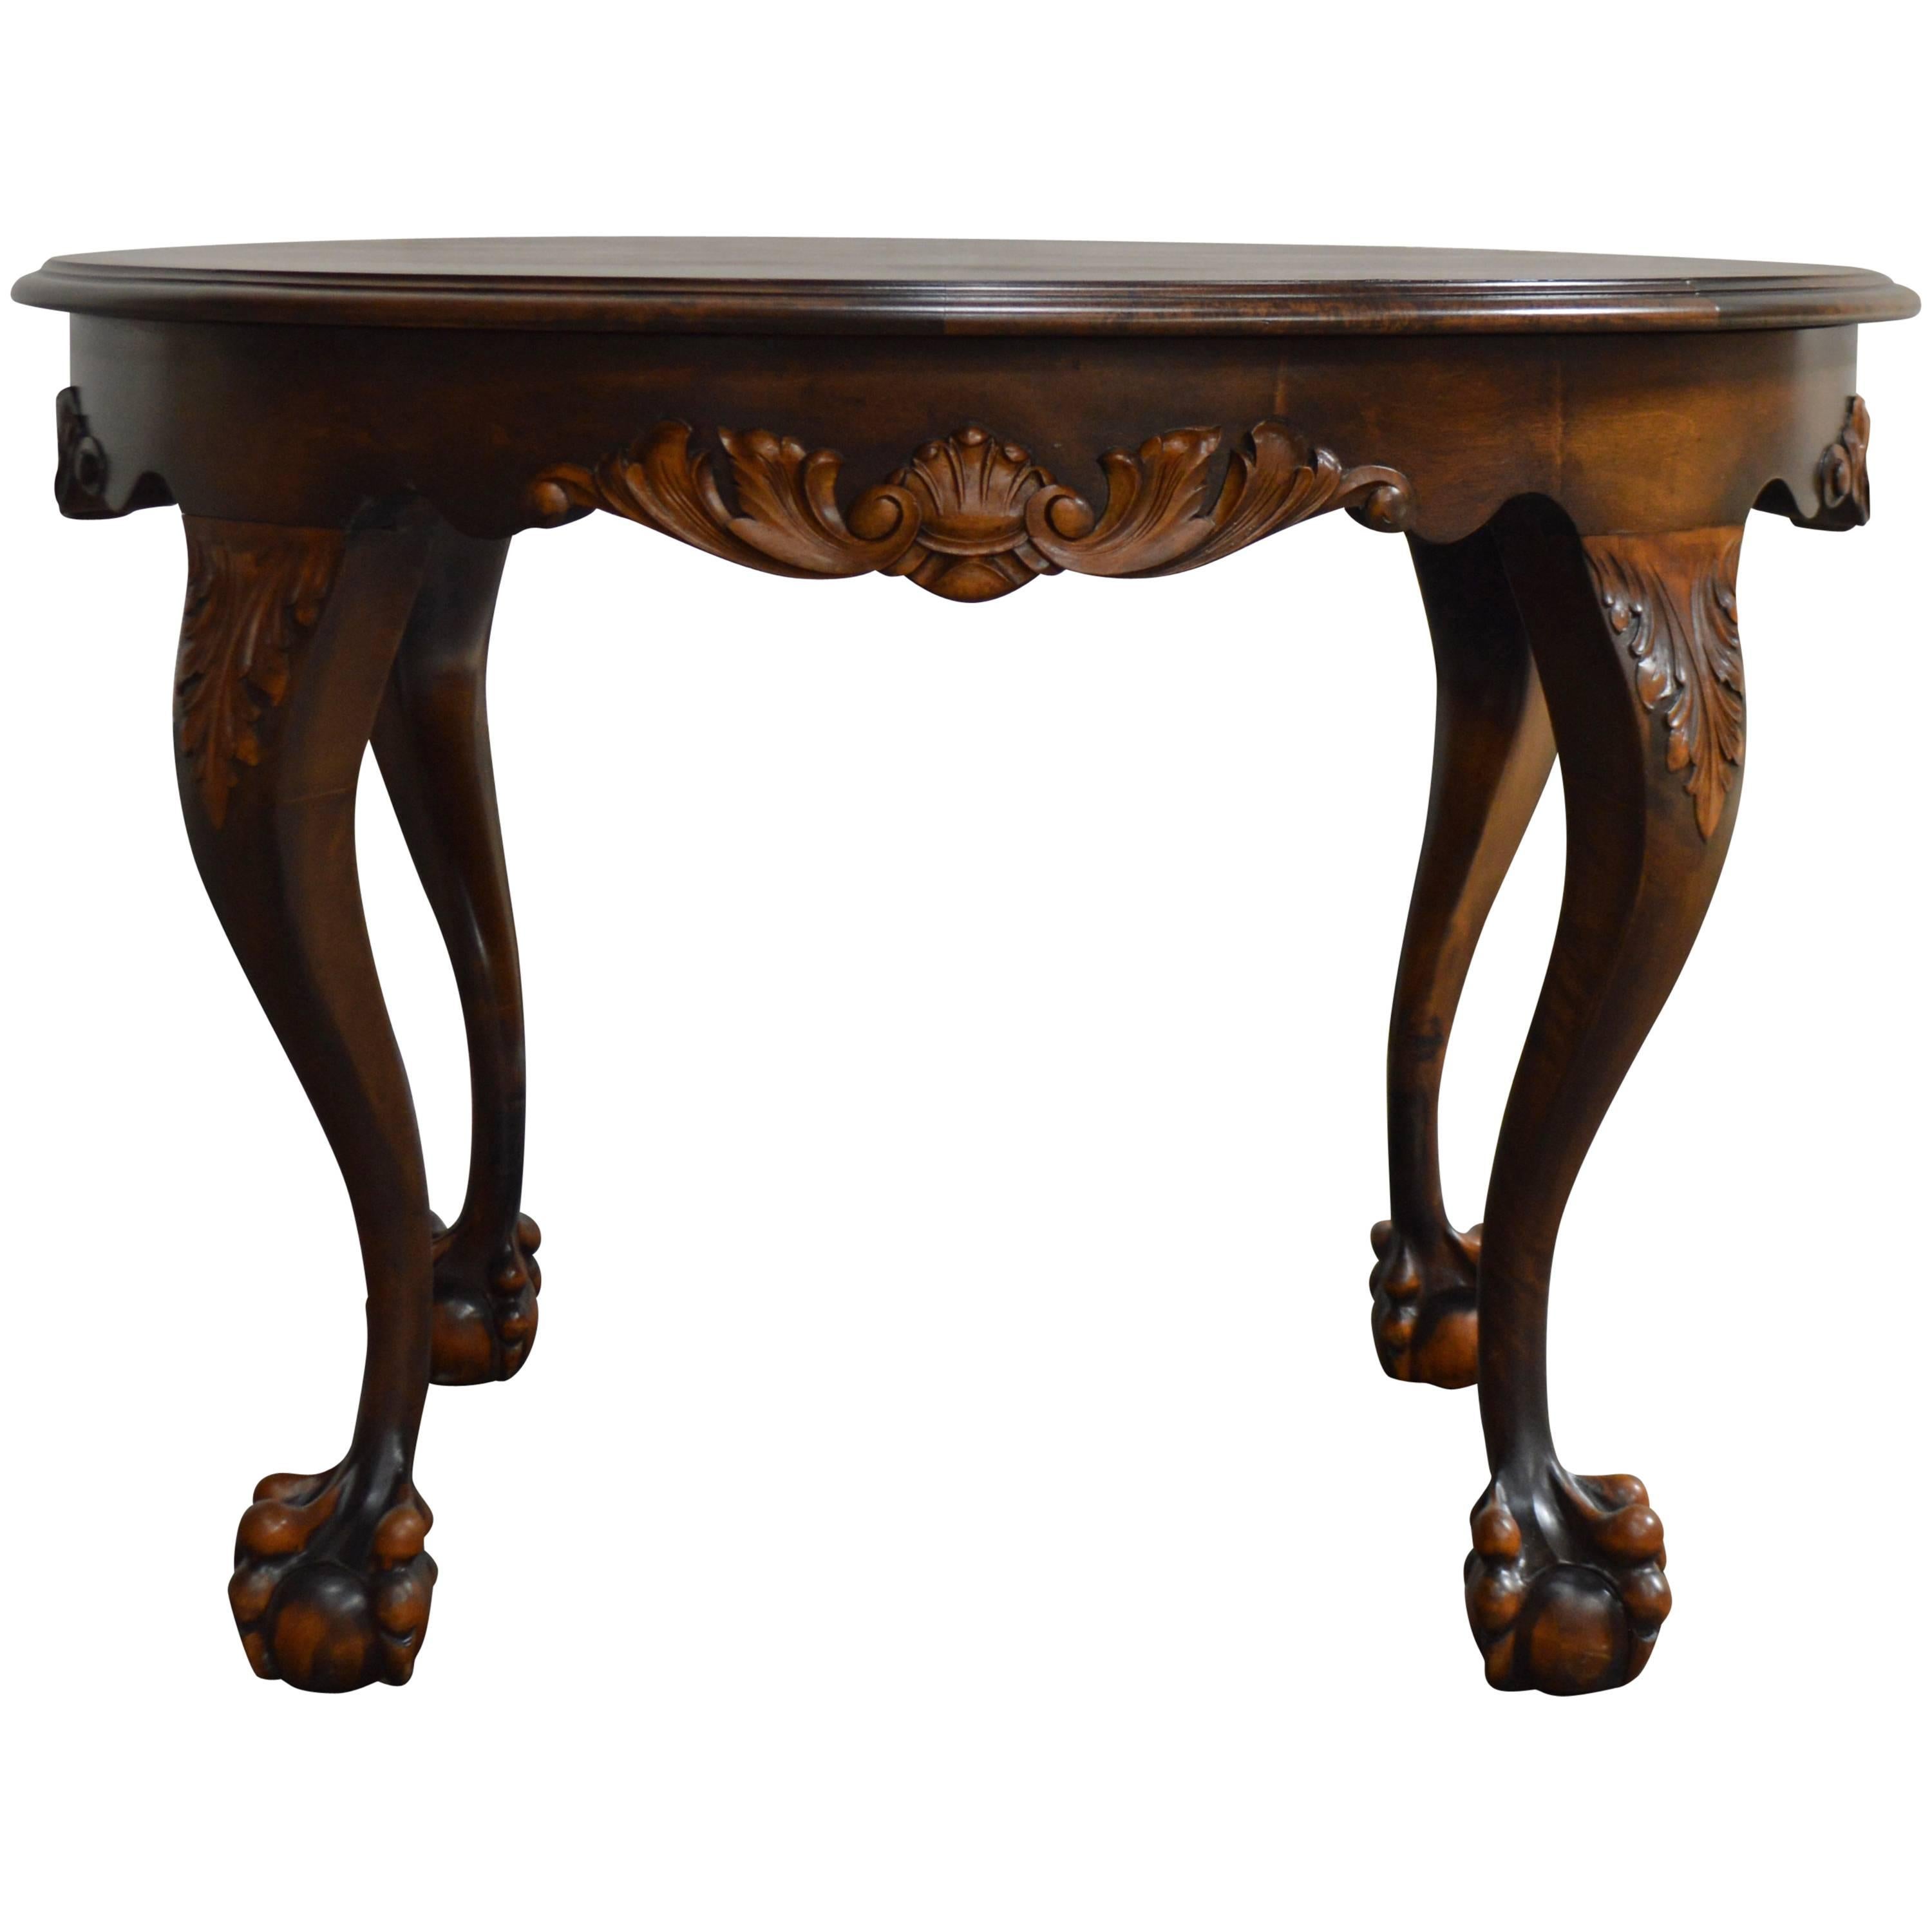 Belle table d'appoint ronde en bouleau flamboyant de style Chippendale